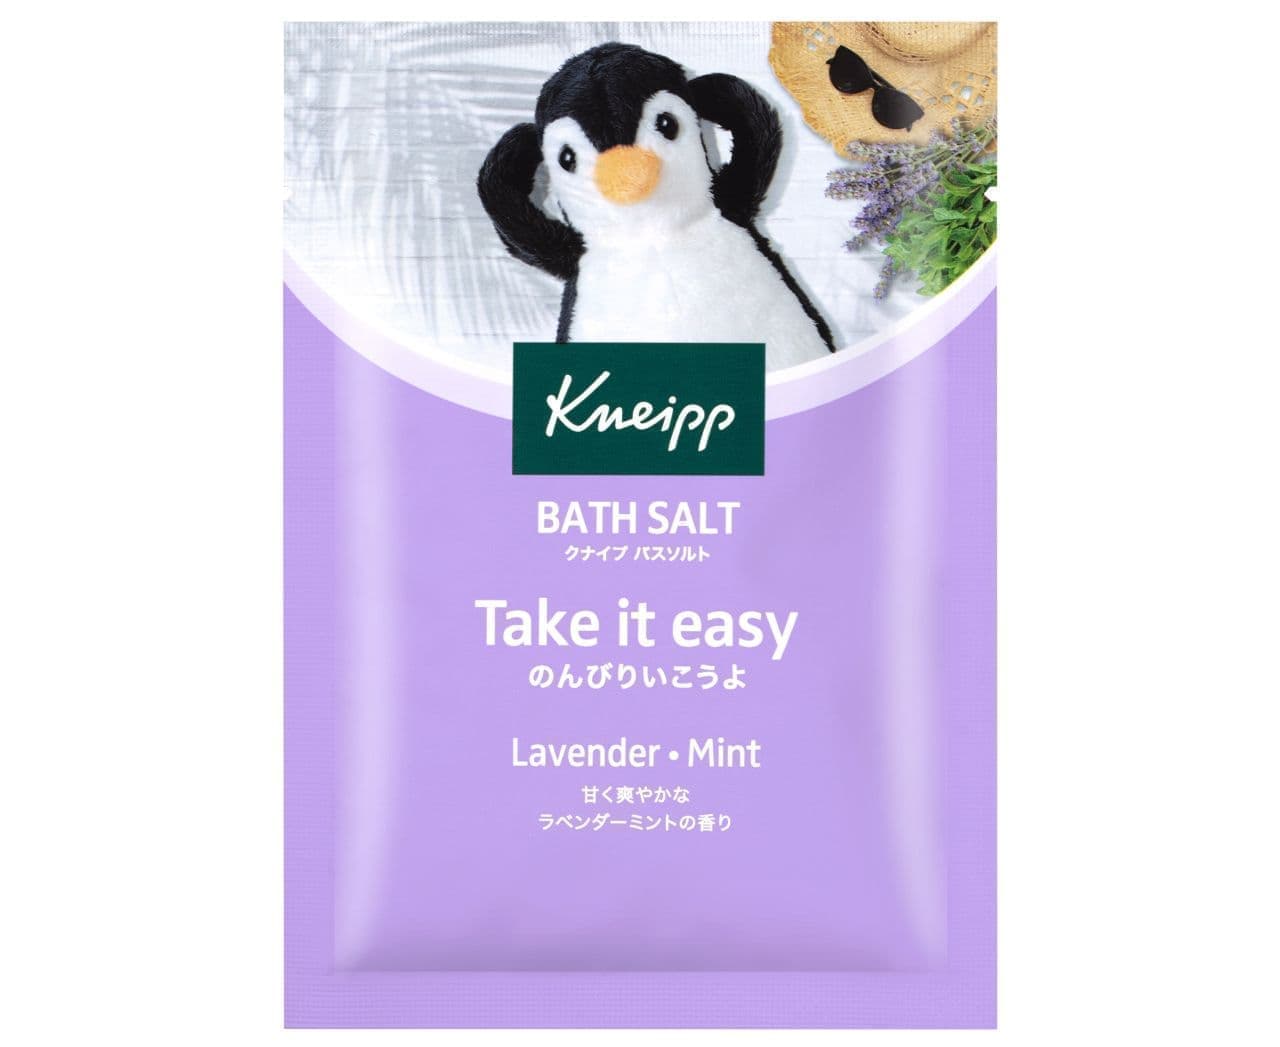 Kneipp Bath Salt Lavender Mint Scent